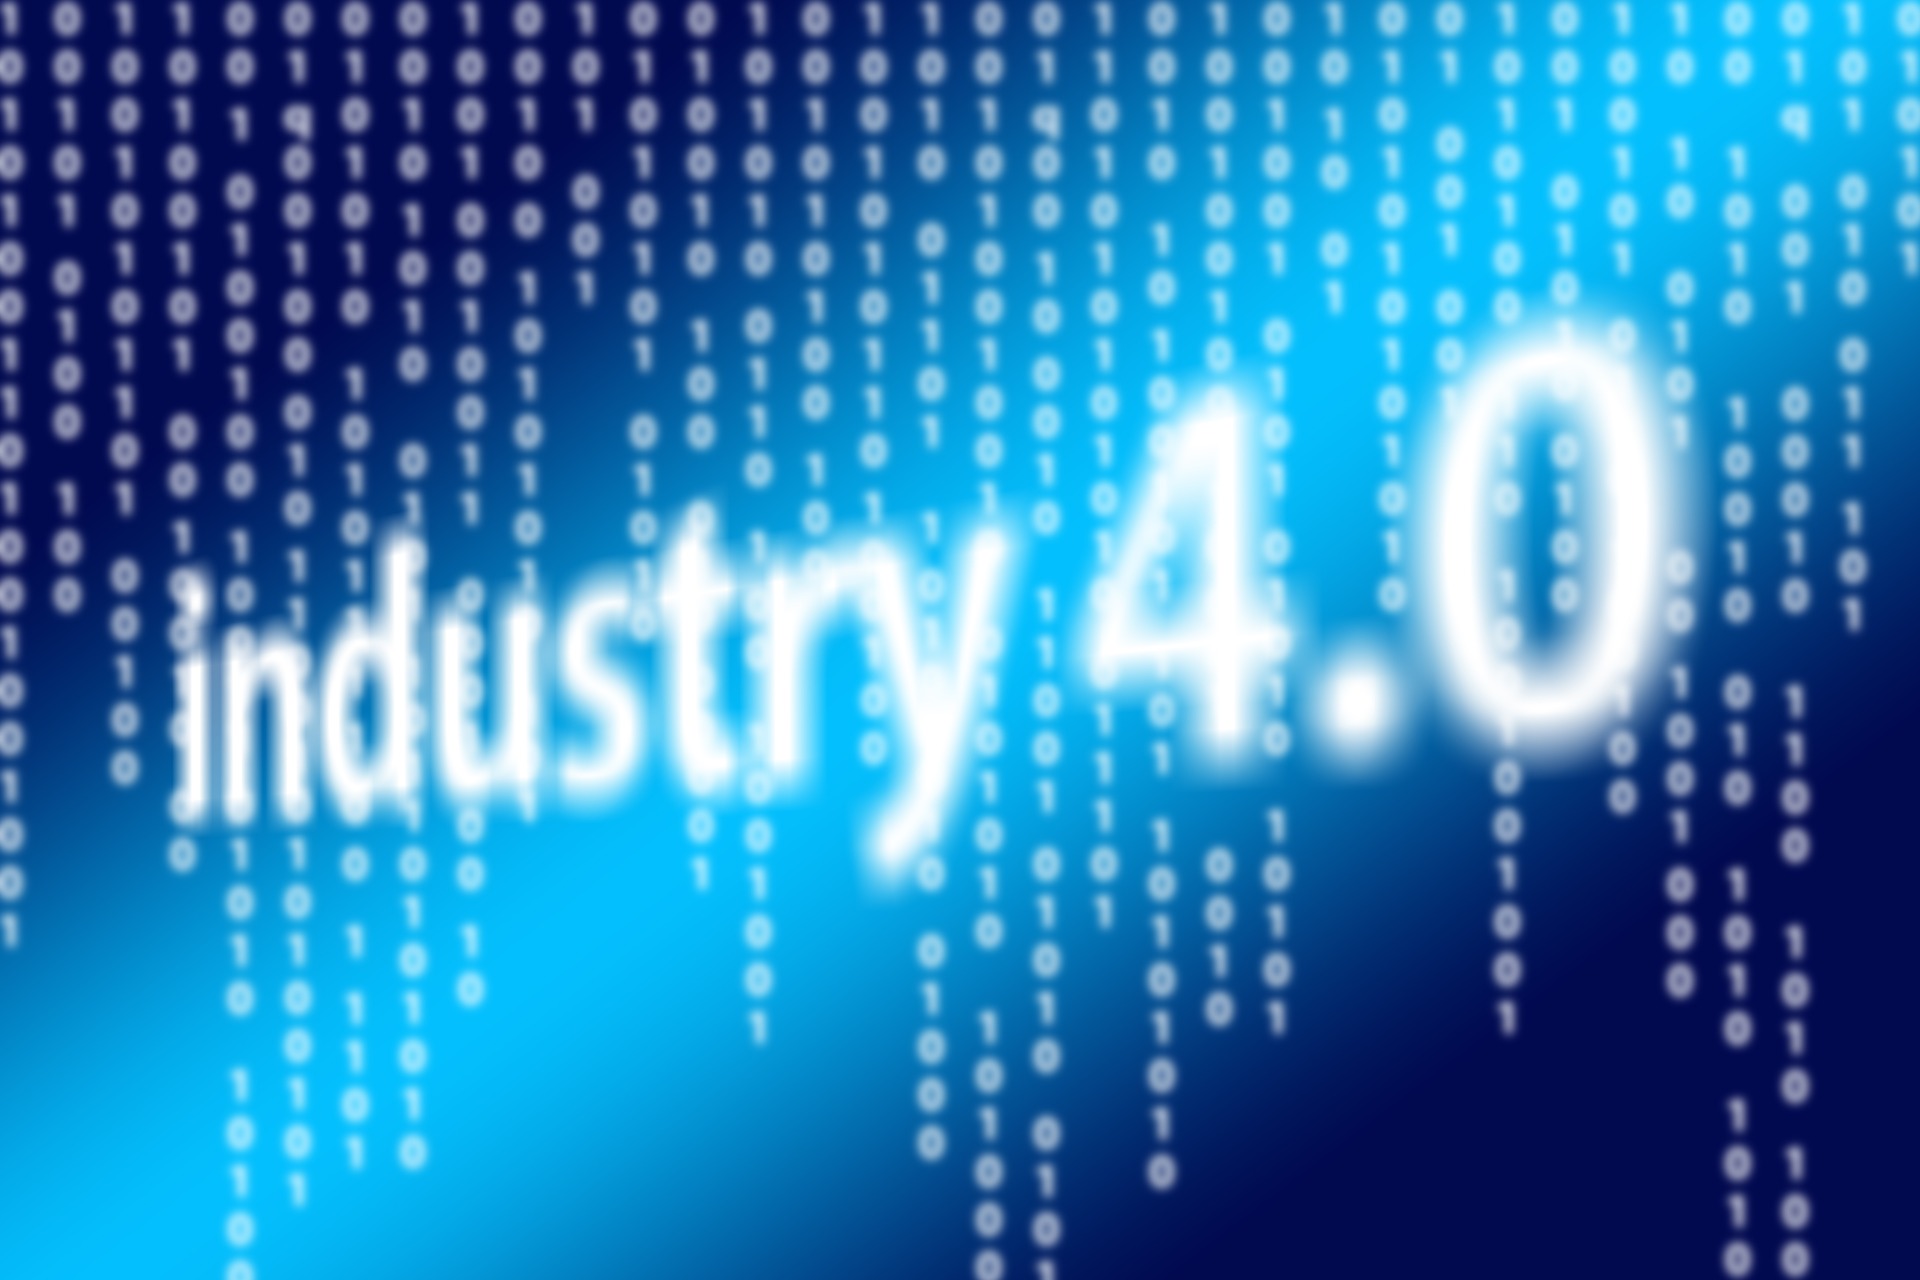 L’industrie 4.0 : une question de technologies  ?